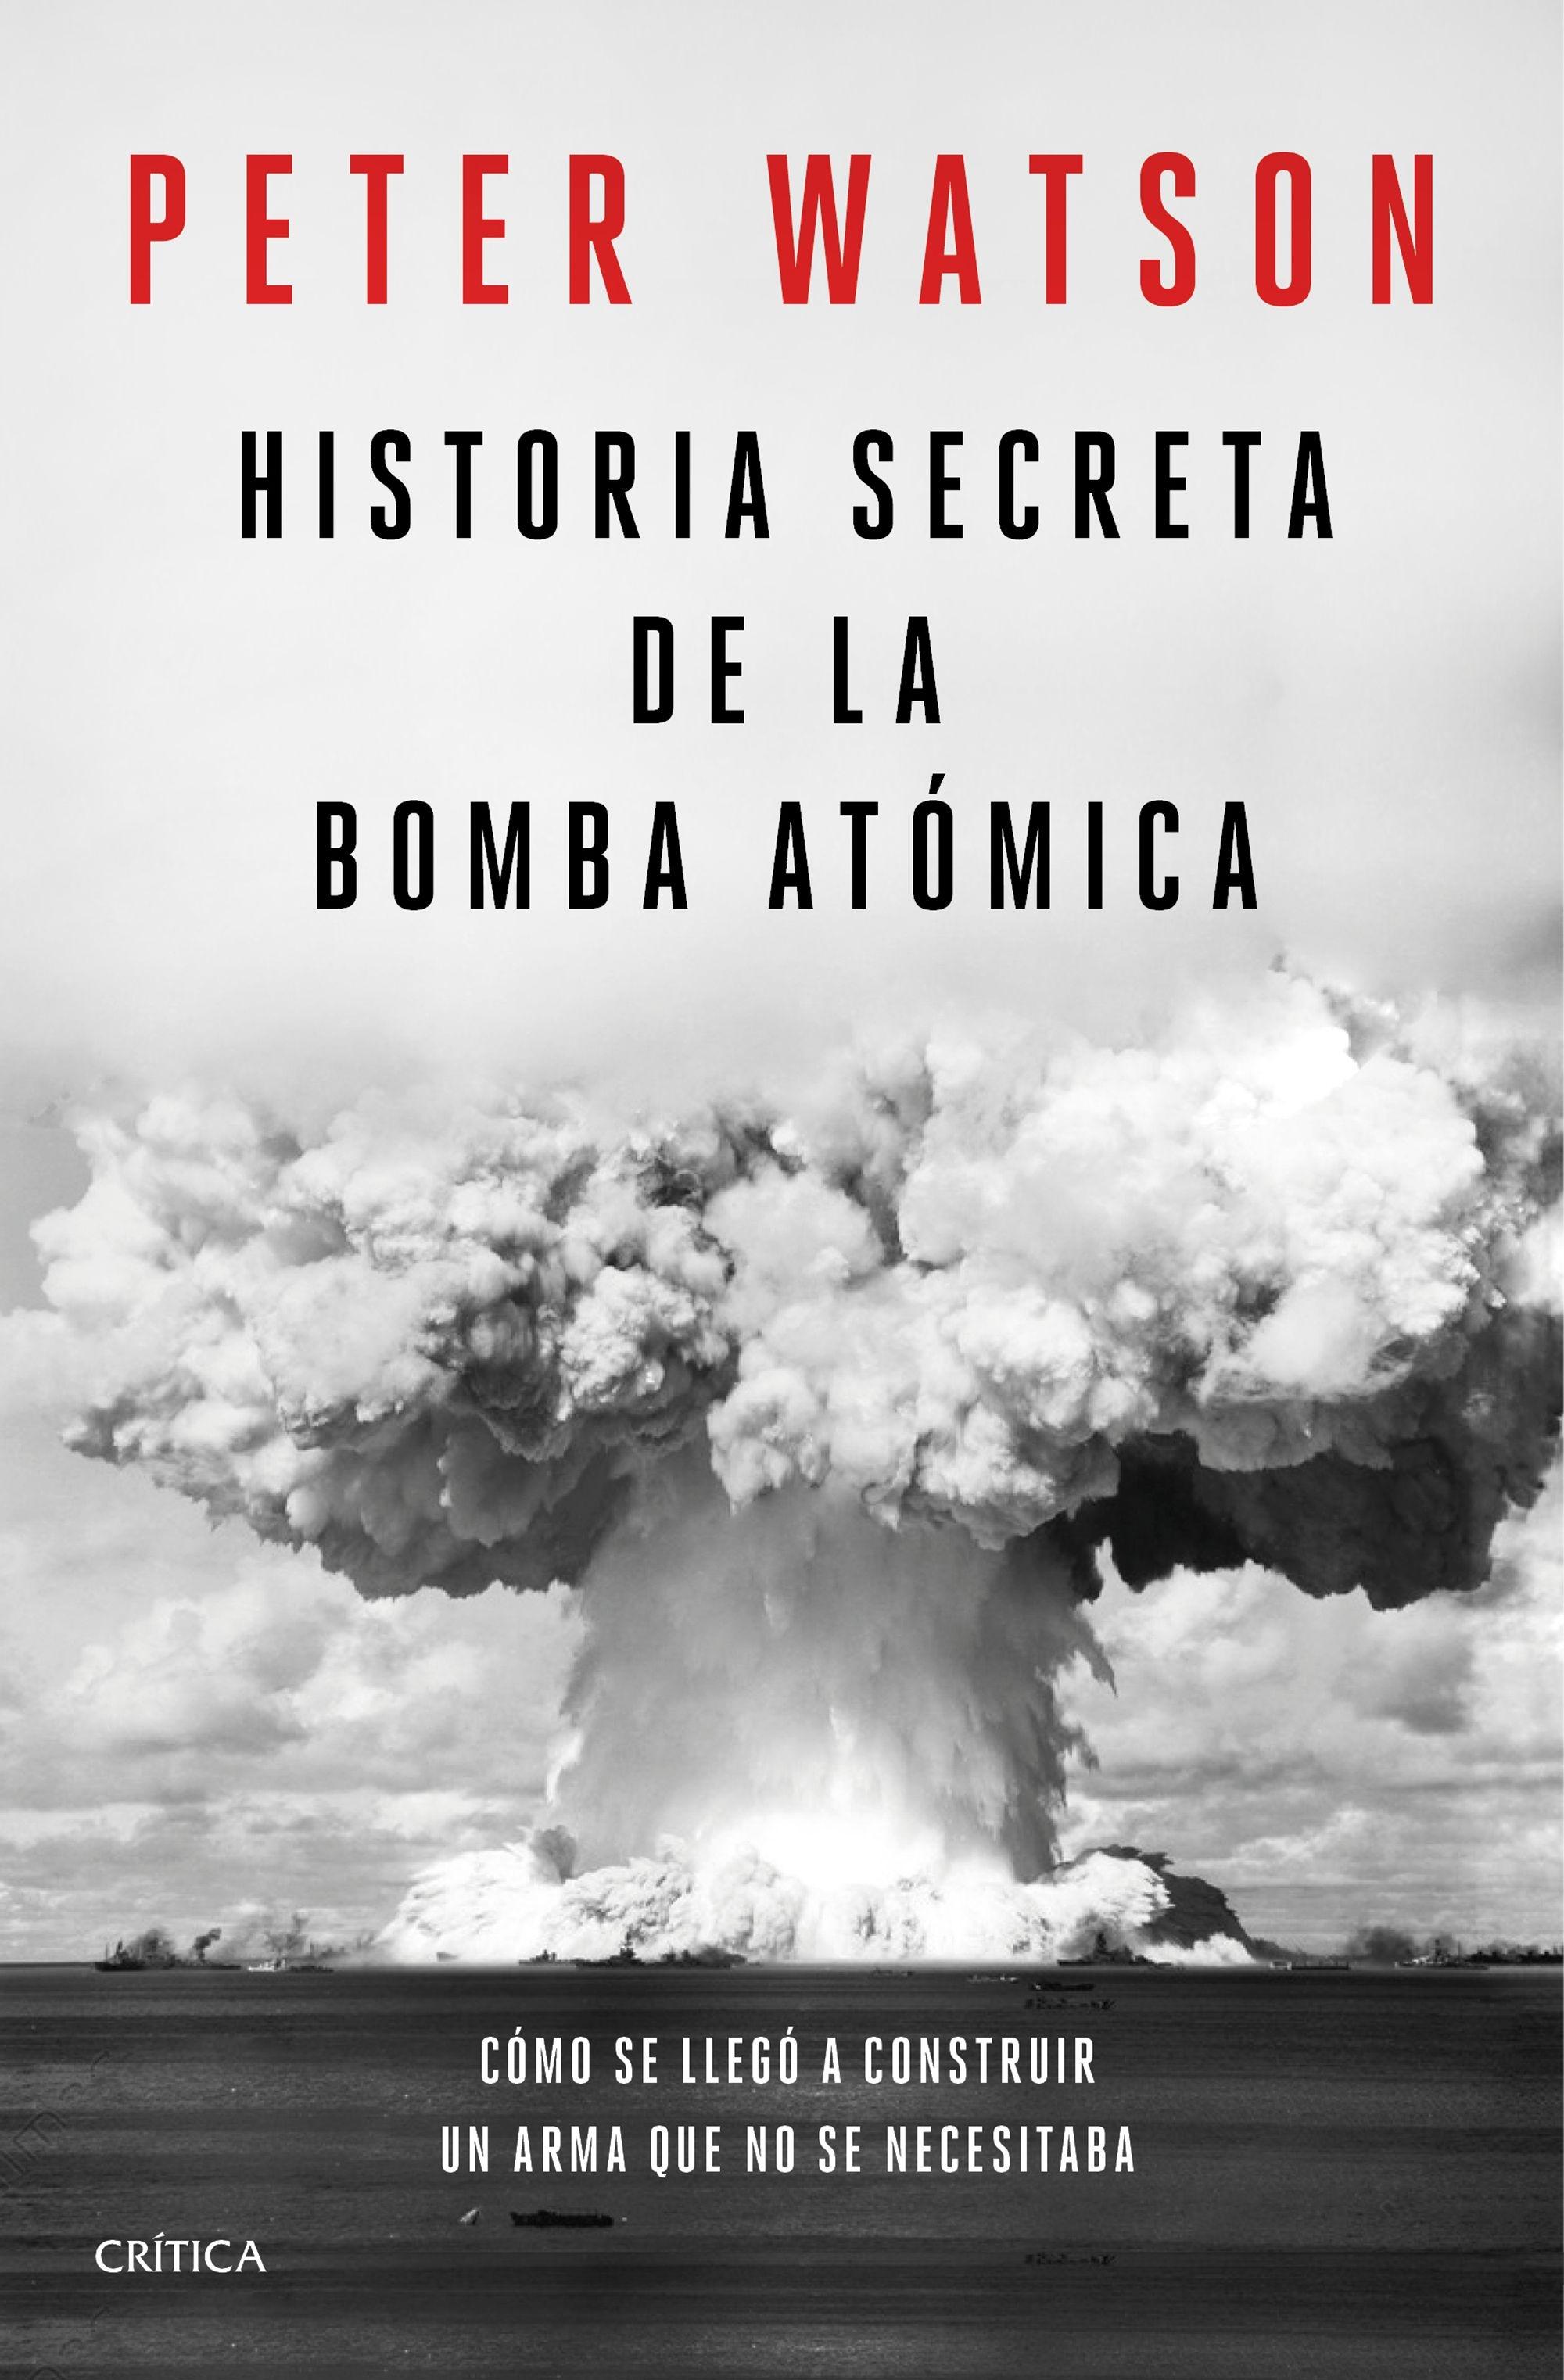 Historia secreta de la bomba atómica "Cómo se llegó a construir un arma que no se necesitaba". 